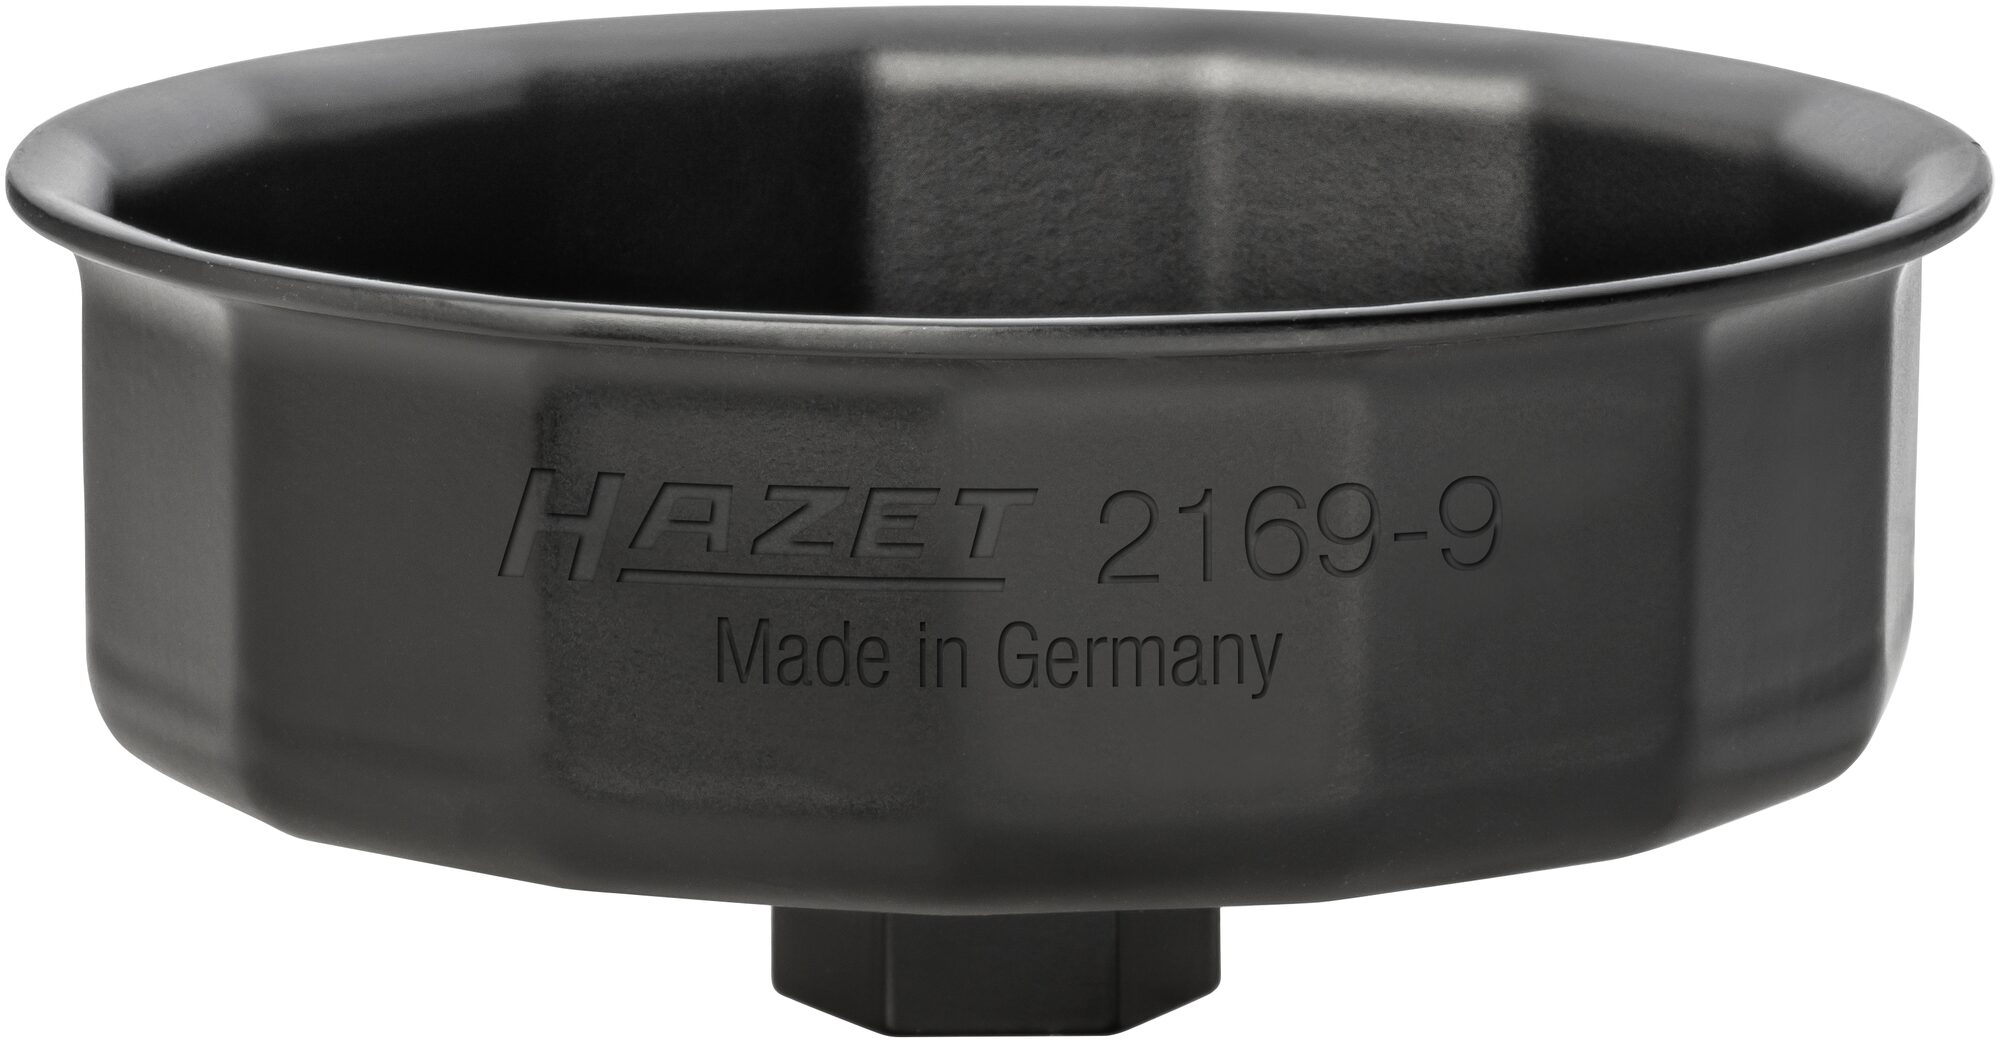 HAZET Ölfilter-Schlüssel 2169-9 · Außen-Sechskant 24 mm, Vierkant hohl 12,5  mm (1/2 Zoll) · Außen 15-kant Profil · 119